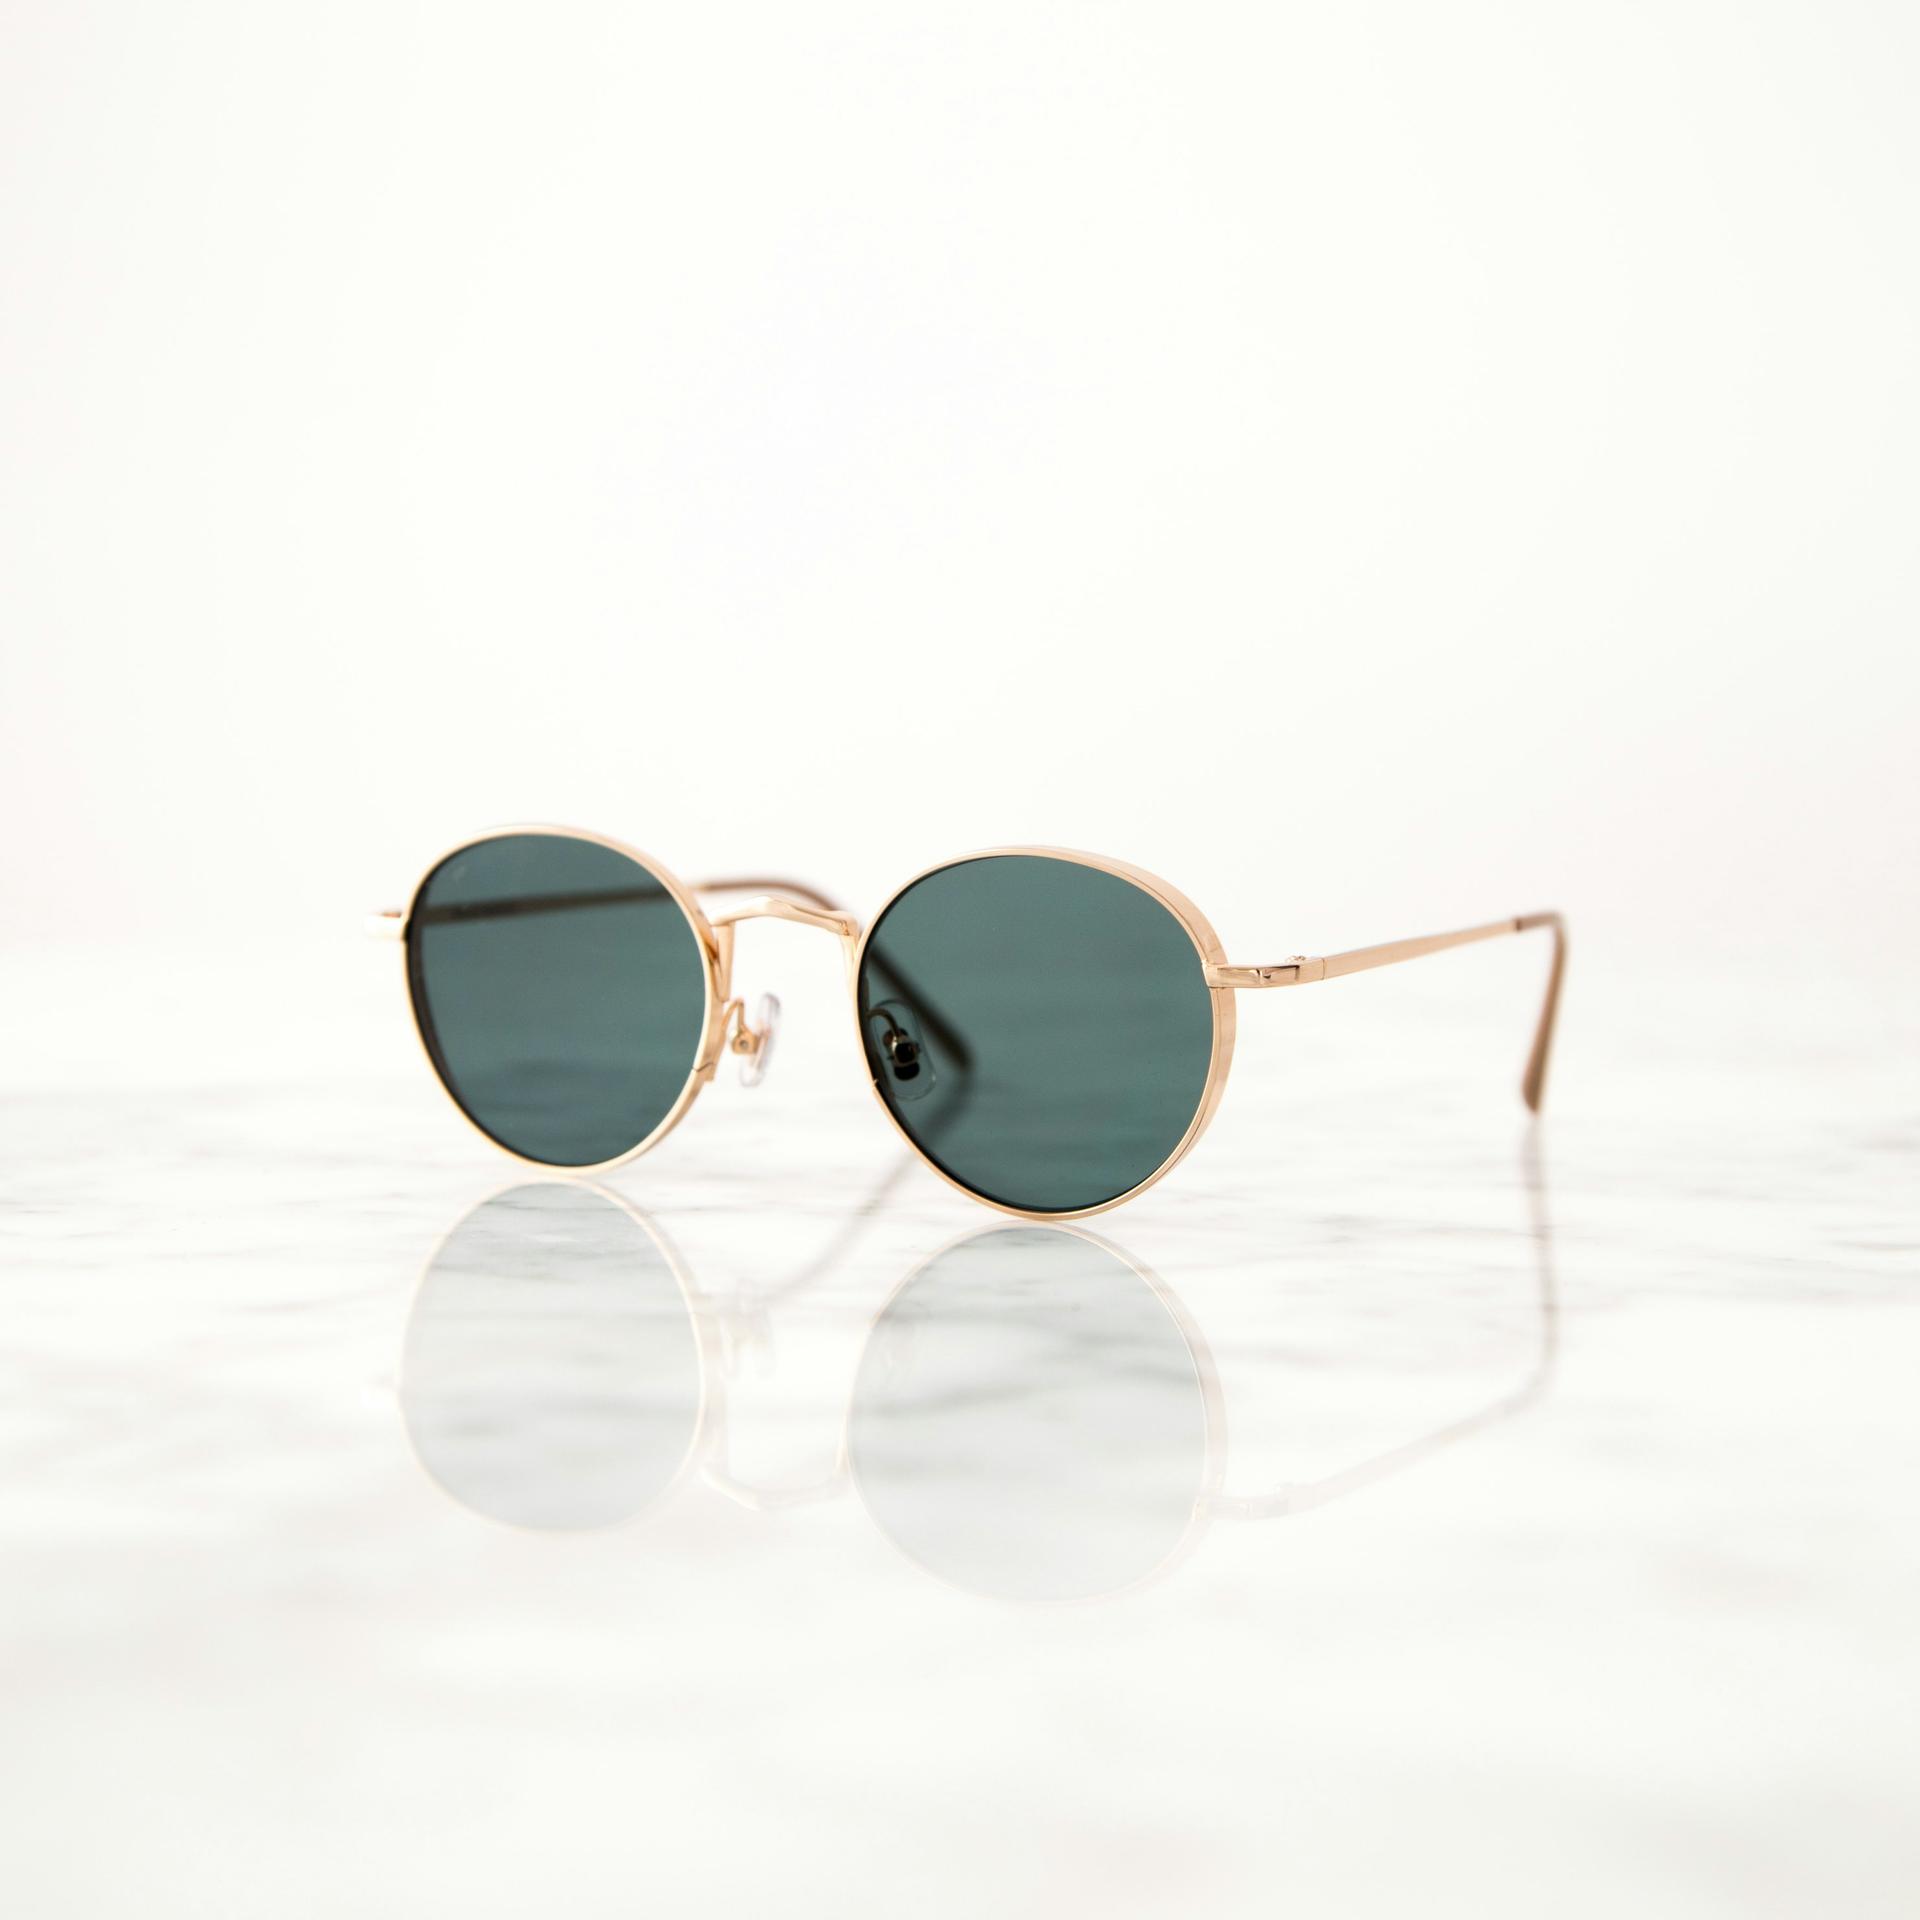 Radiate Elegance: Gold-Framed Sunglasses for the Ultimate Glamour